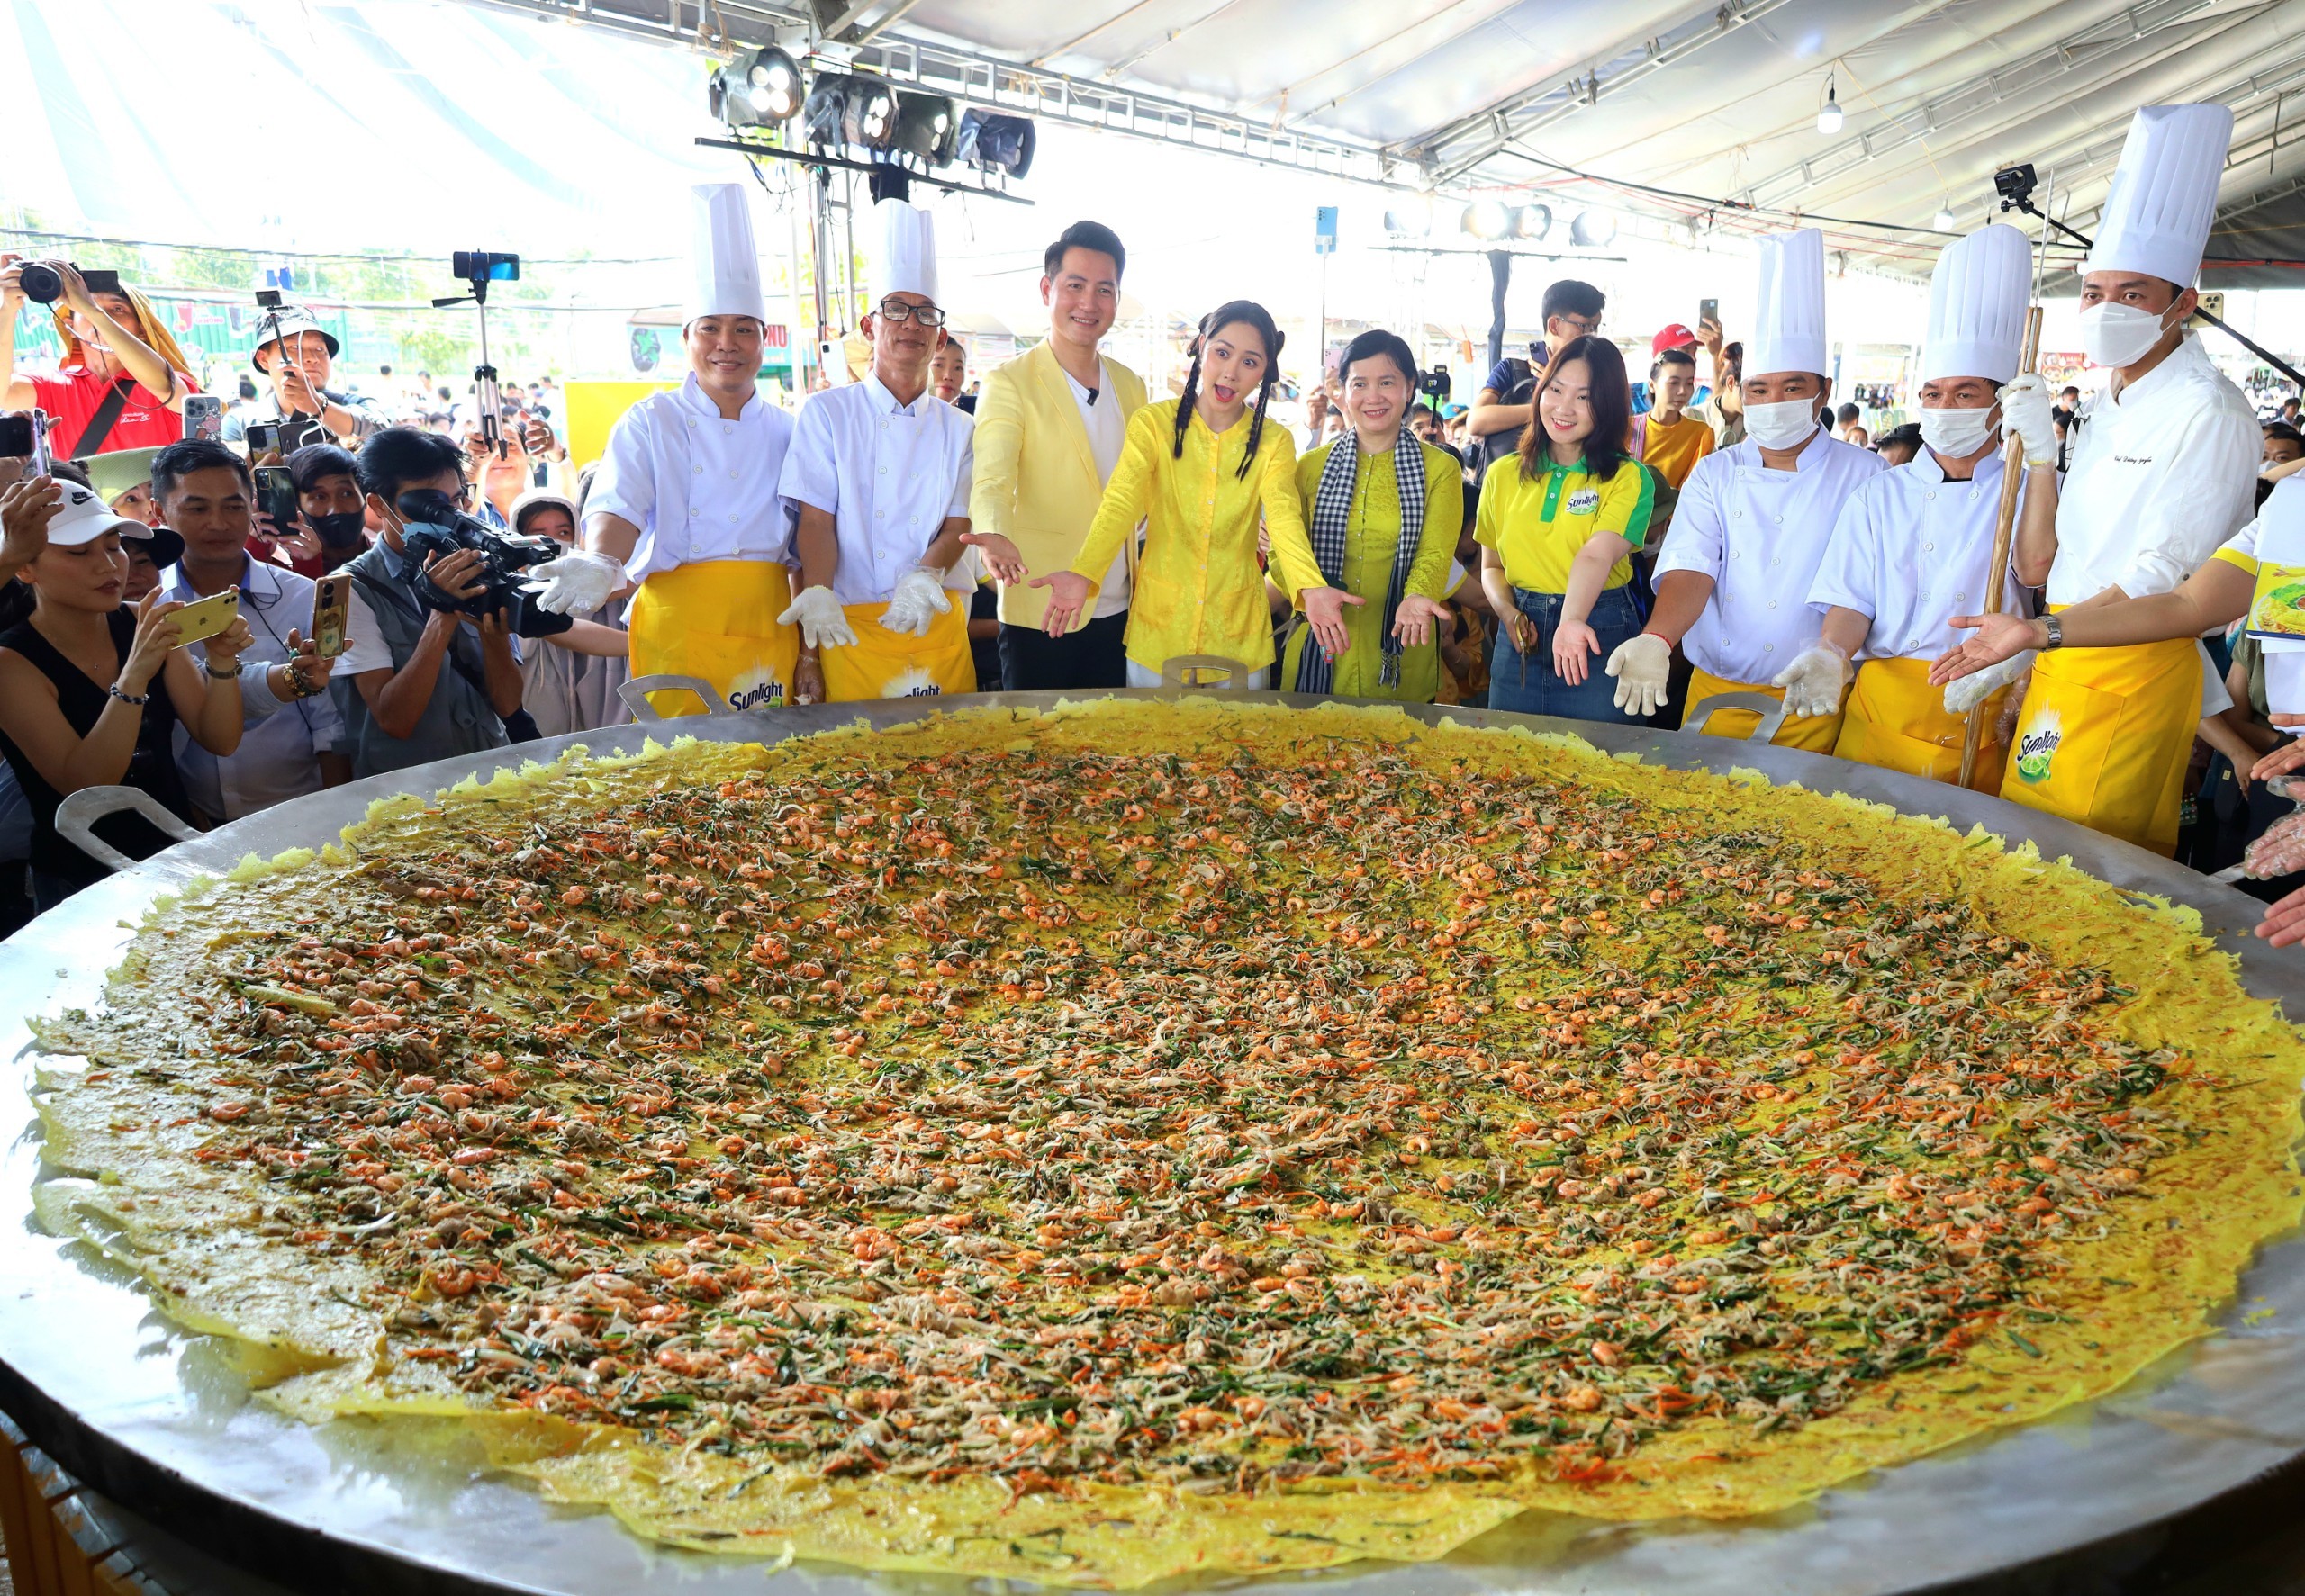 Ca sĩ Nguyễn Phi Hùng và Diễn viên Tường Vi cùng các nghệ nhân thực hiện và chiêu đãi miễn phí bánh xèo khổng lồ đường kính 3 mét.